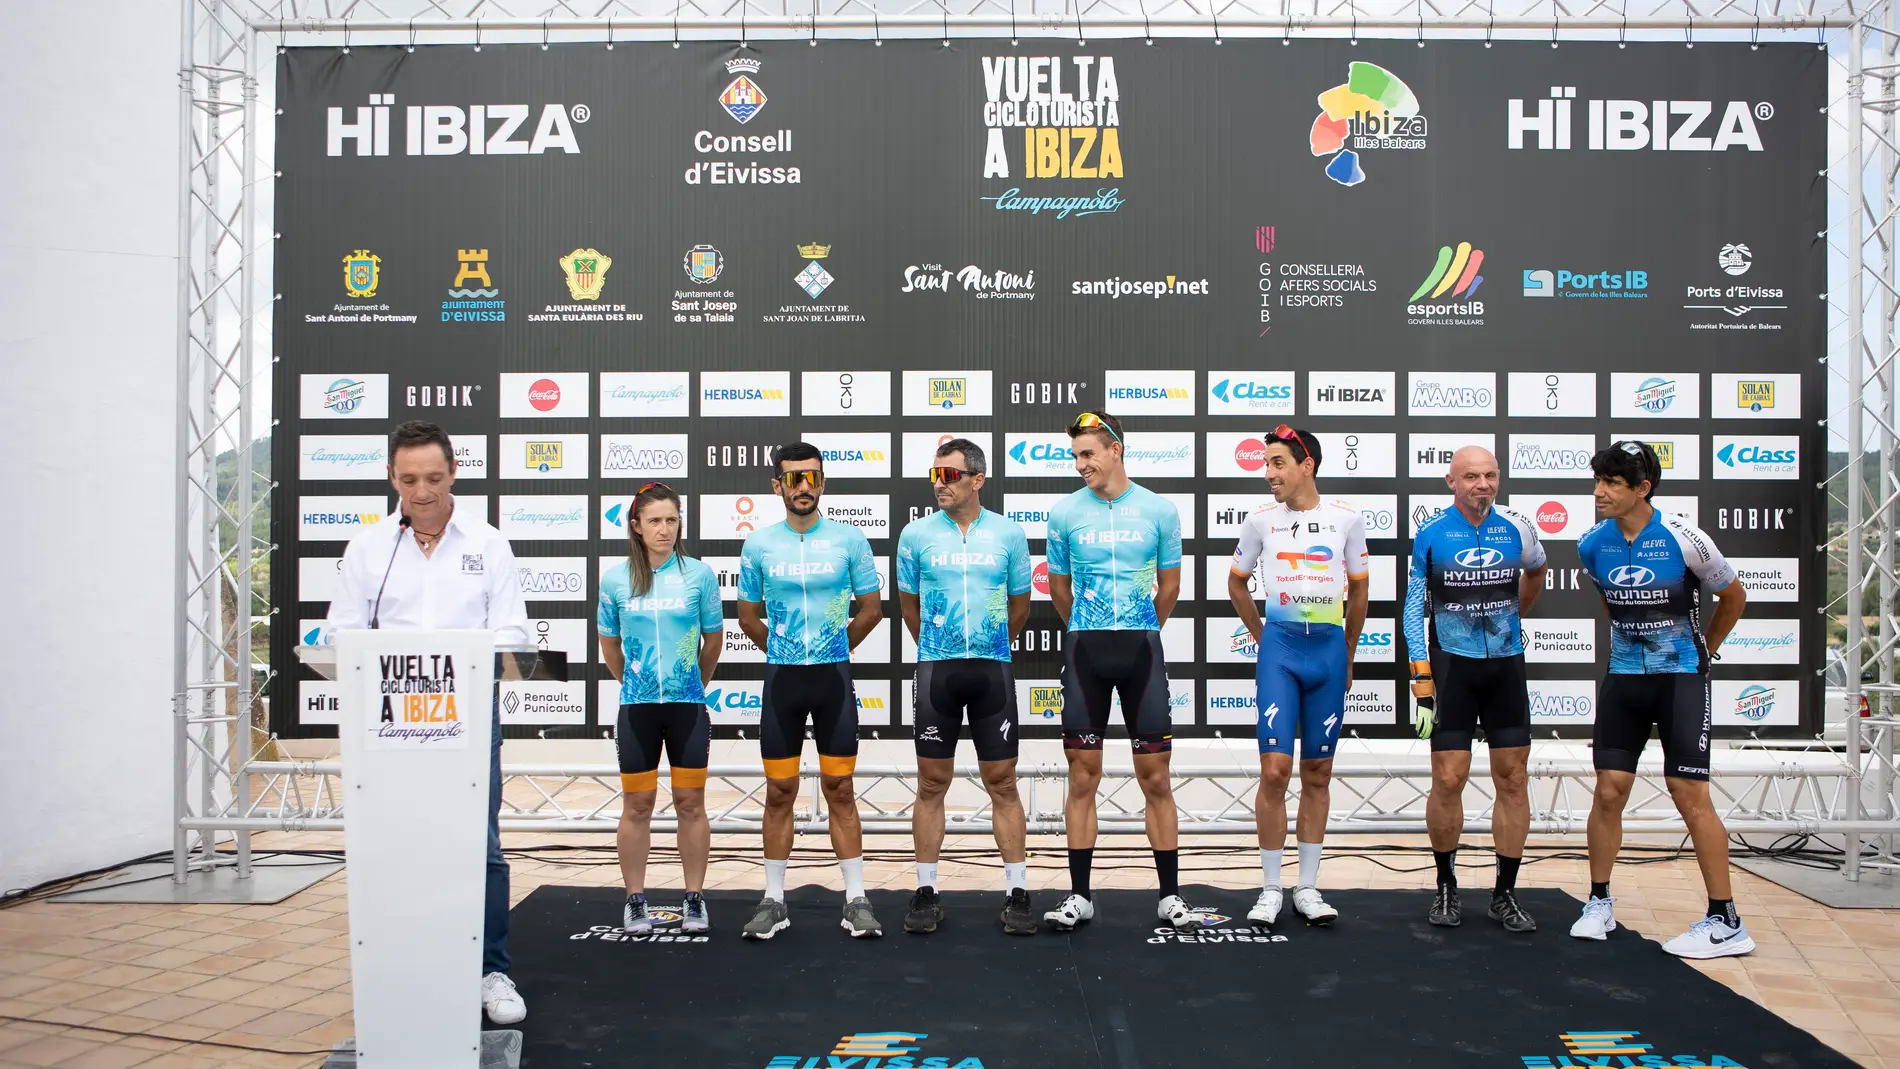 Miguel Indurain, Óscar Pereiro, Alberto Contador y Alejandro Valverde dan lustre a la fiesta del ciclismo en Ibiza